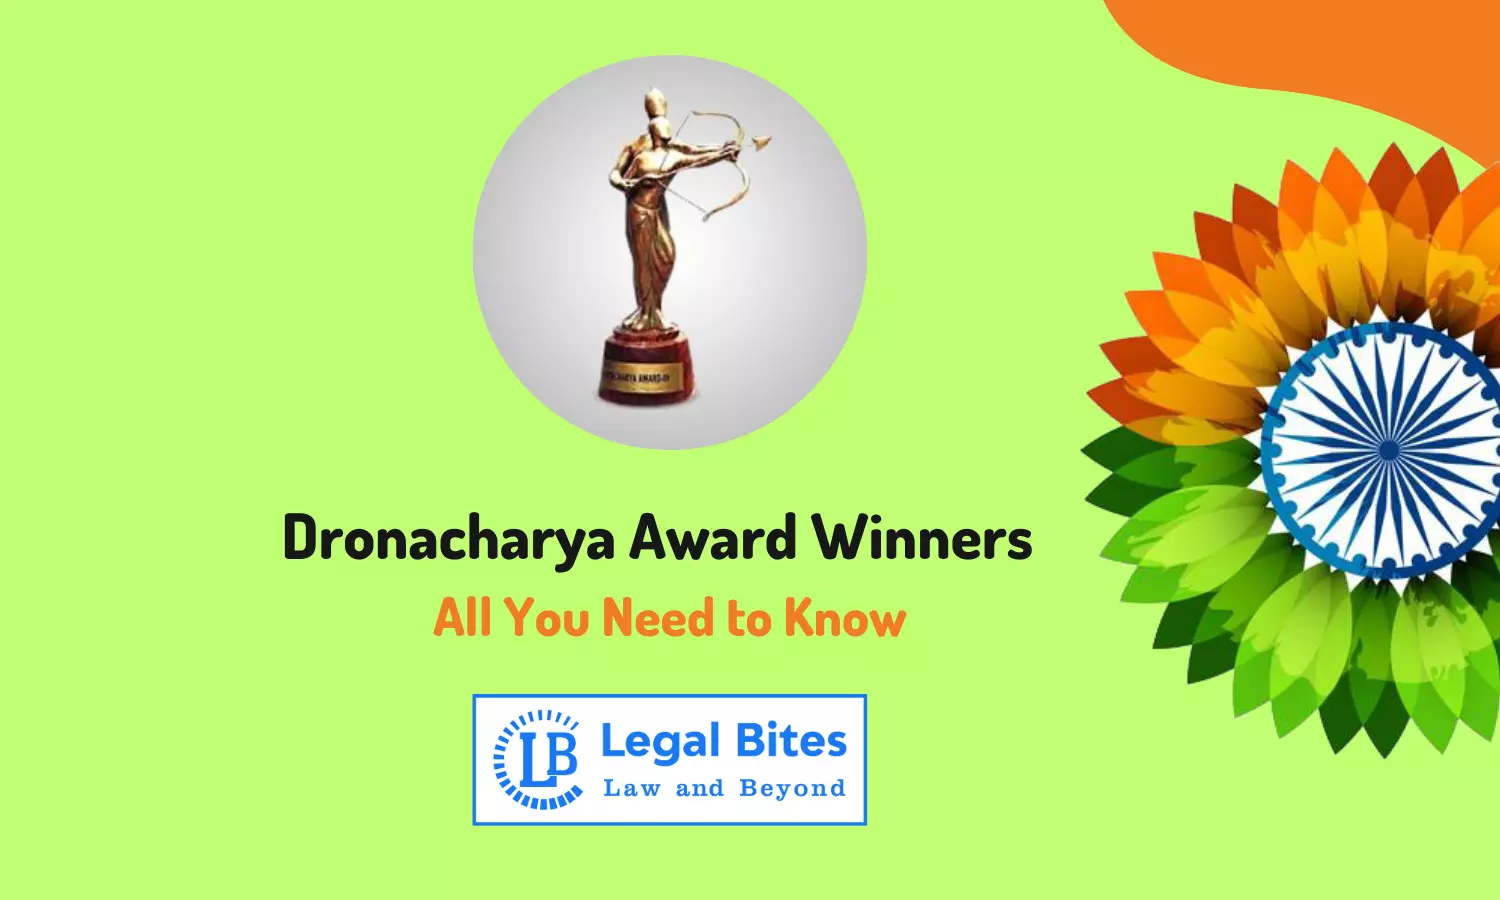 Dronacharya Award Winners - All You Need to Know